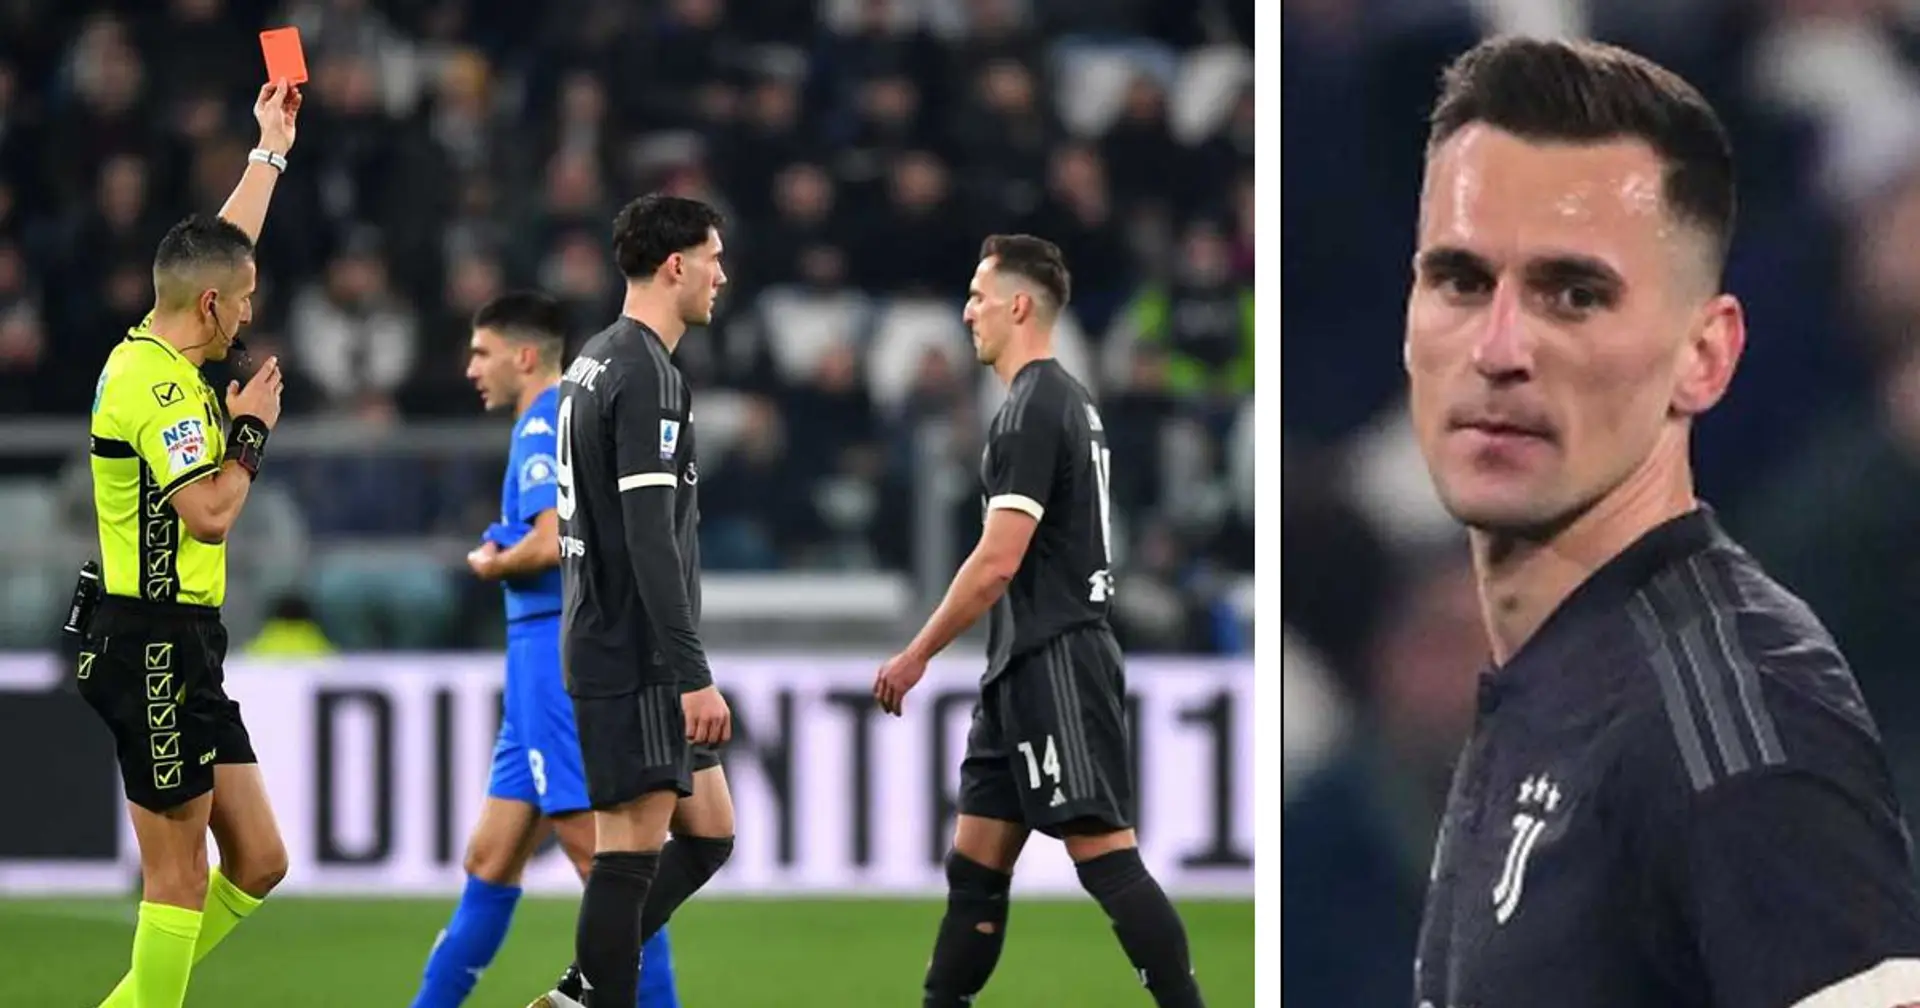 "Quando lo vedo mi sale lo sconforto", i tifosi della Juventus hanno eletto il peggiore con l'Empoli - Non è Milik